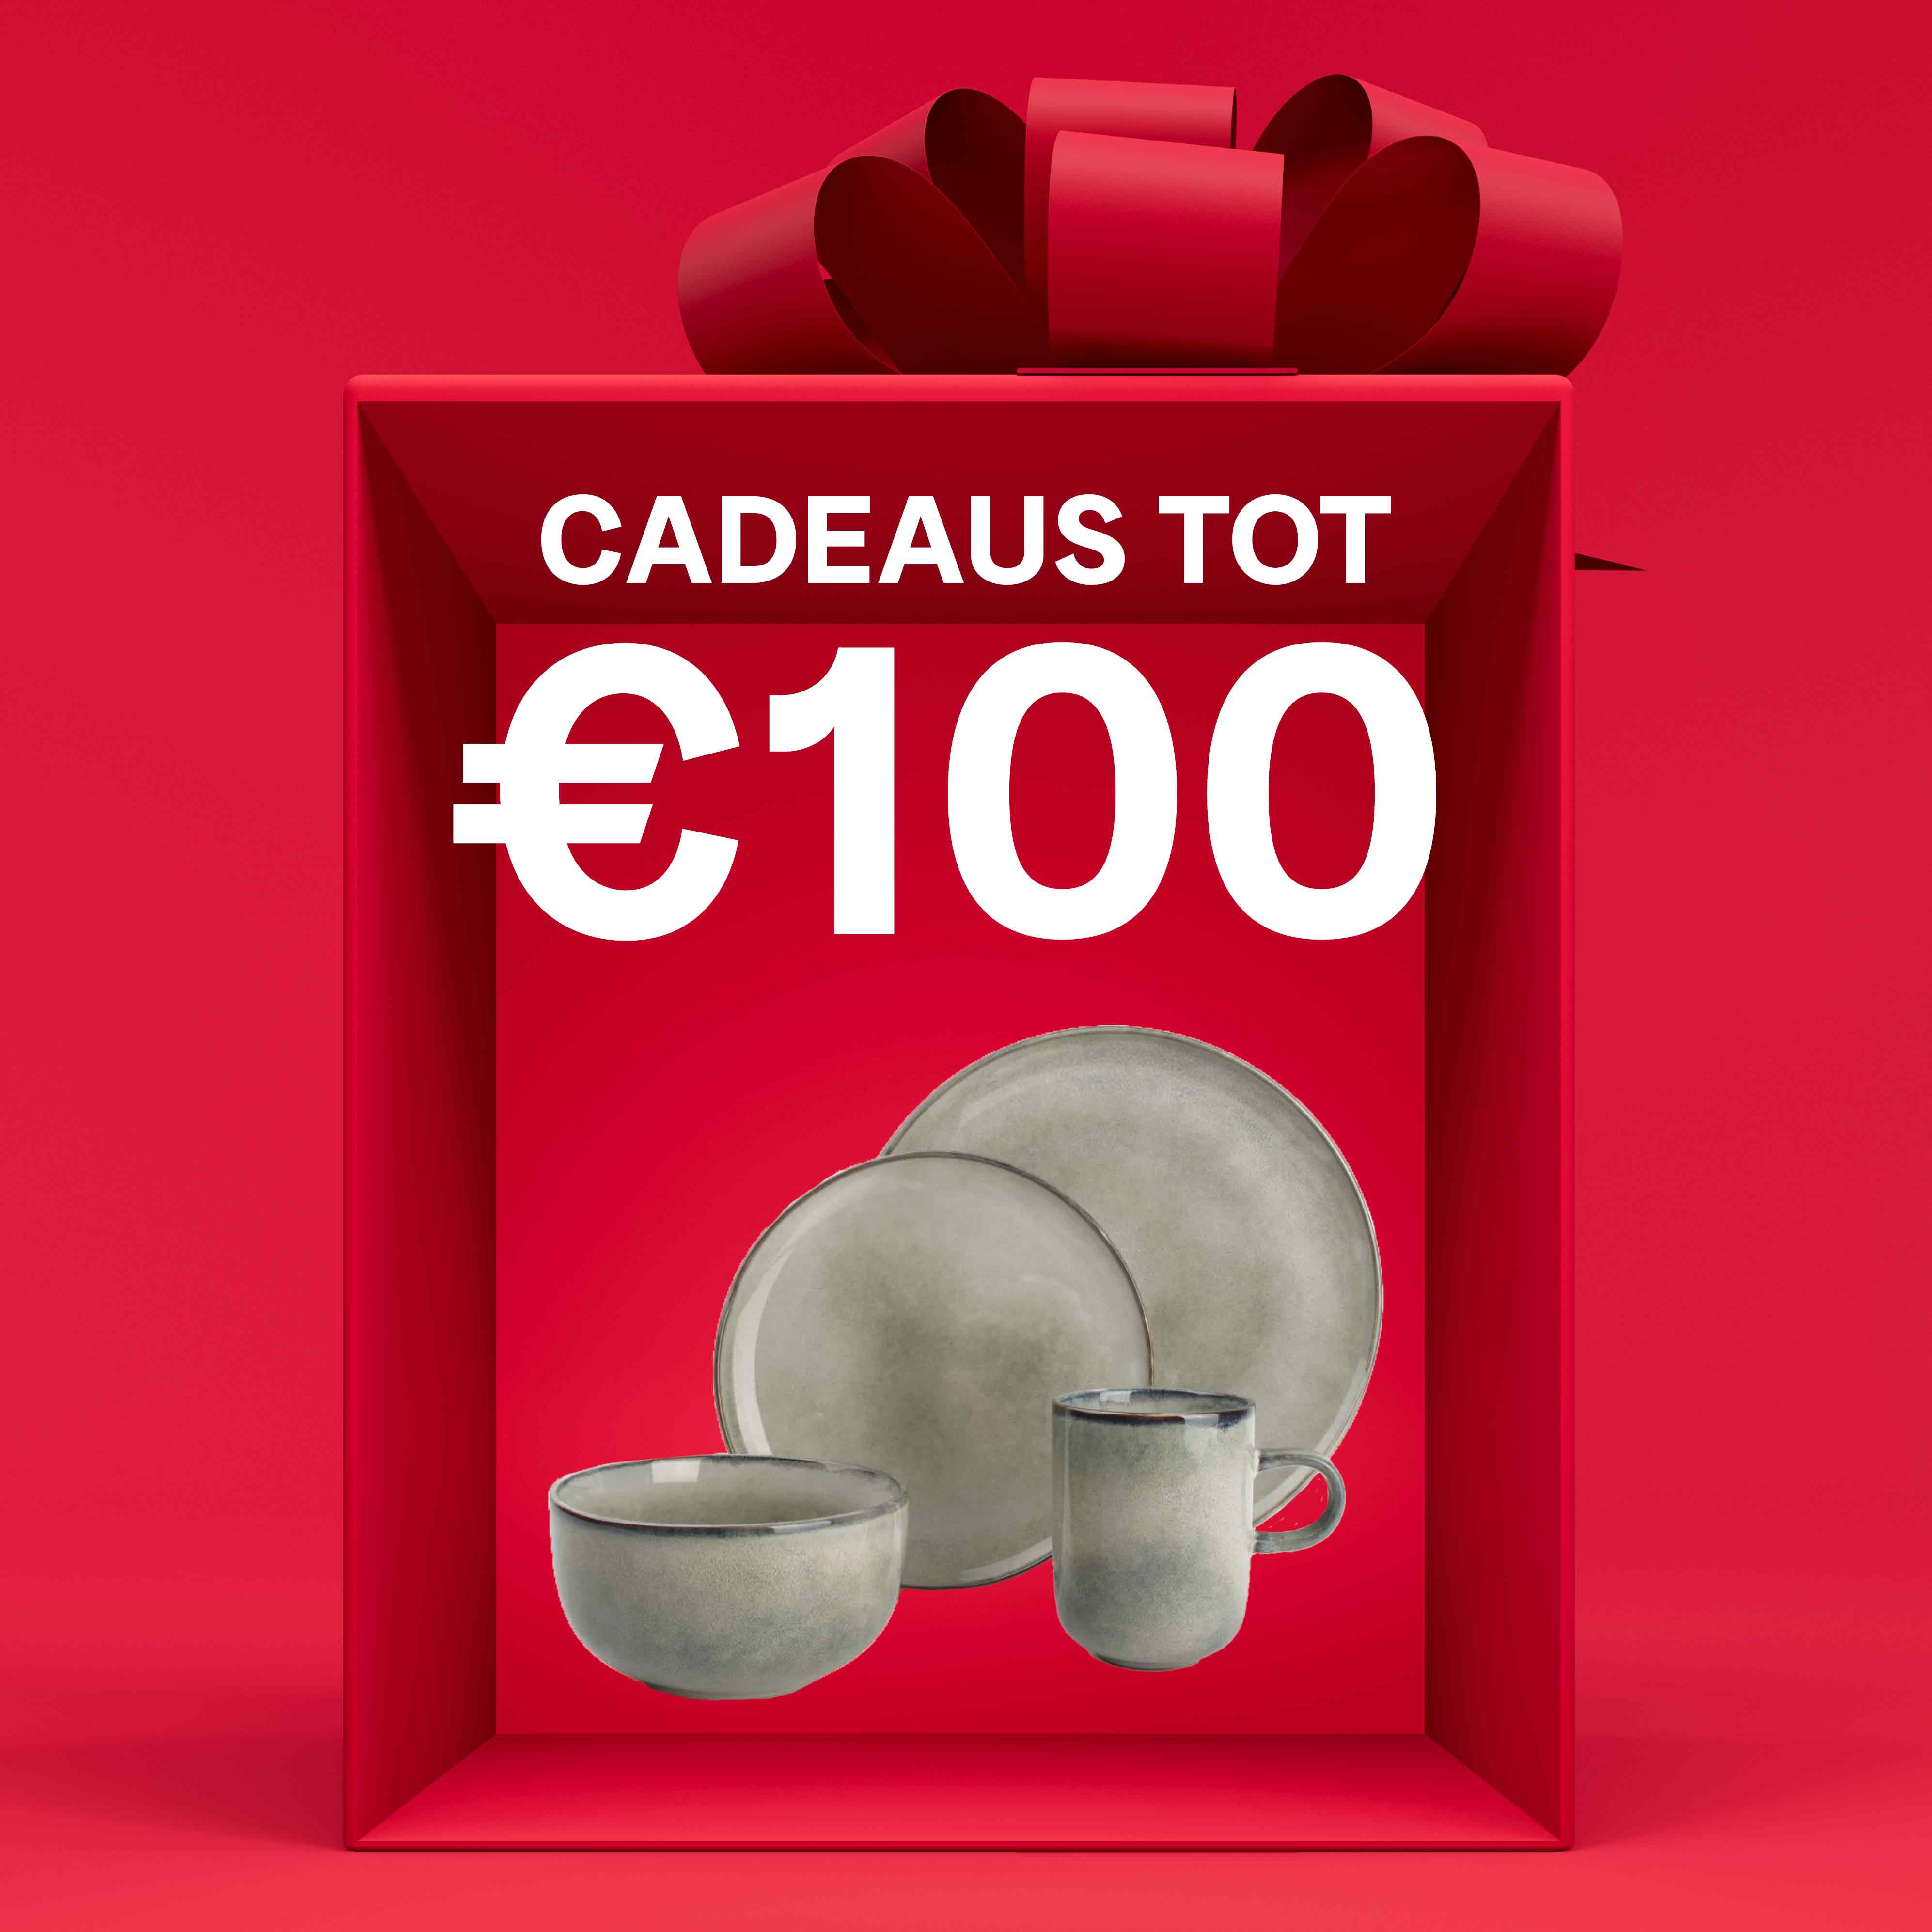 Cadeaus tot €100